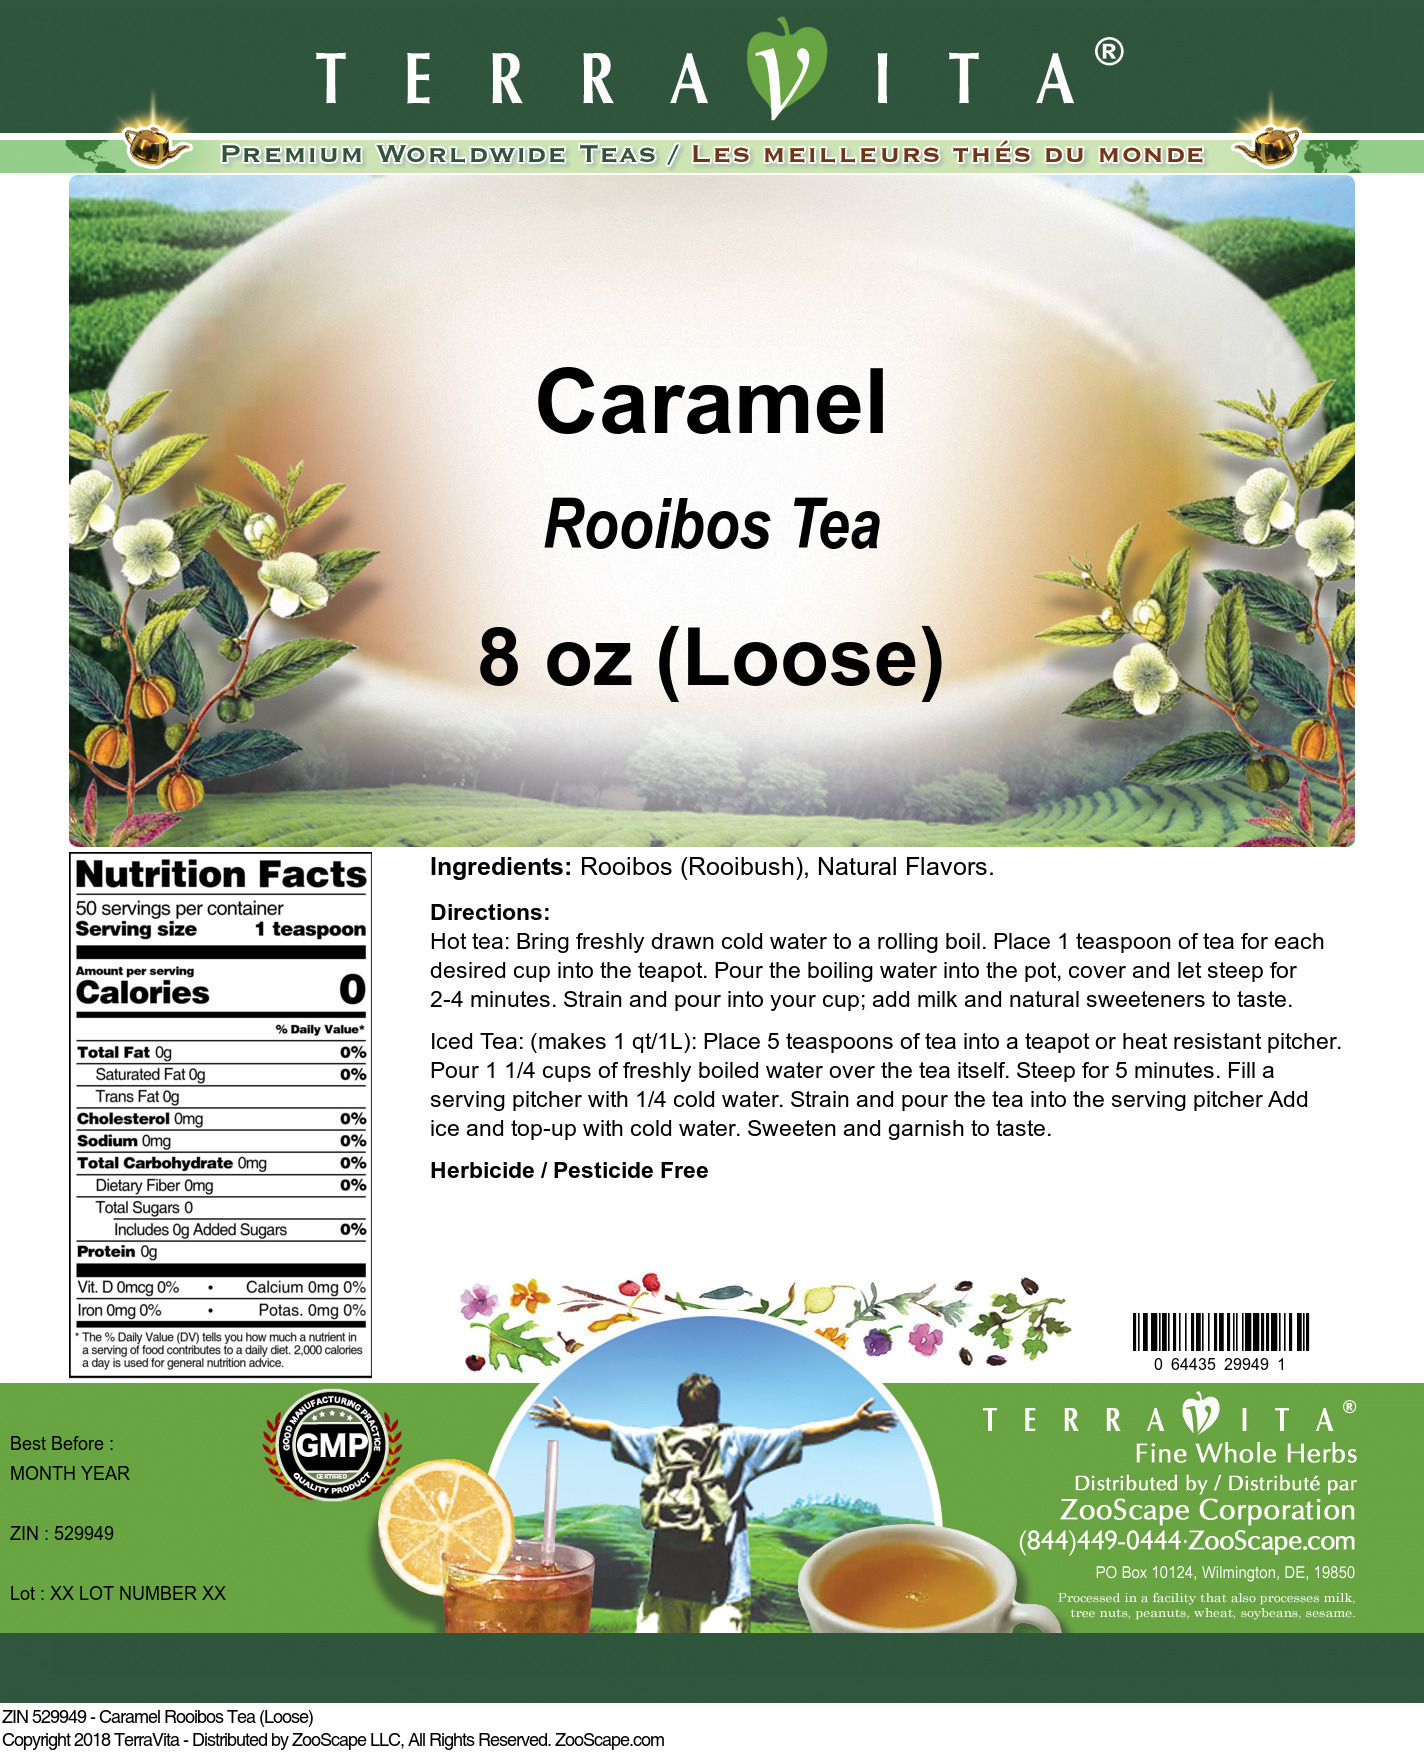 Caramel Rooibos Tea (Loose) - Label